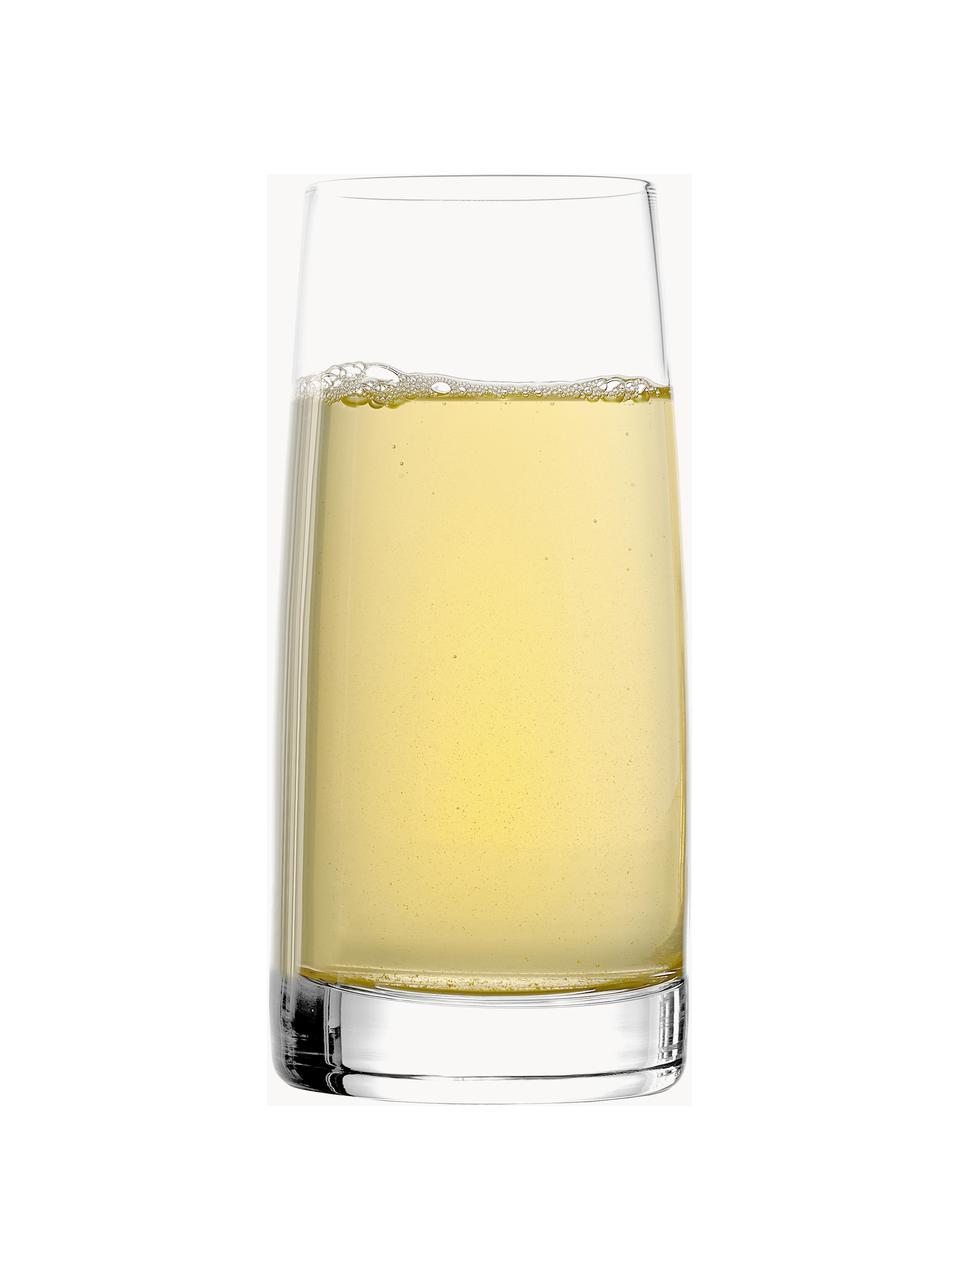 Bicchieri alti in cristallo Experience 6 pz, Cristallo, Trasparente, Ø 7 x Alt. 14 cm, 360 ml